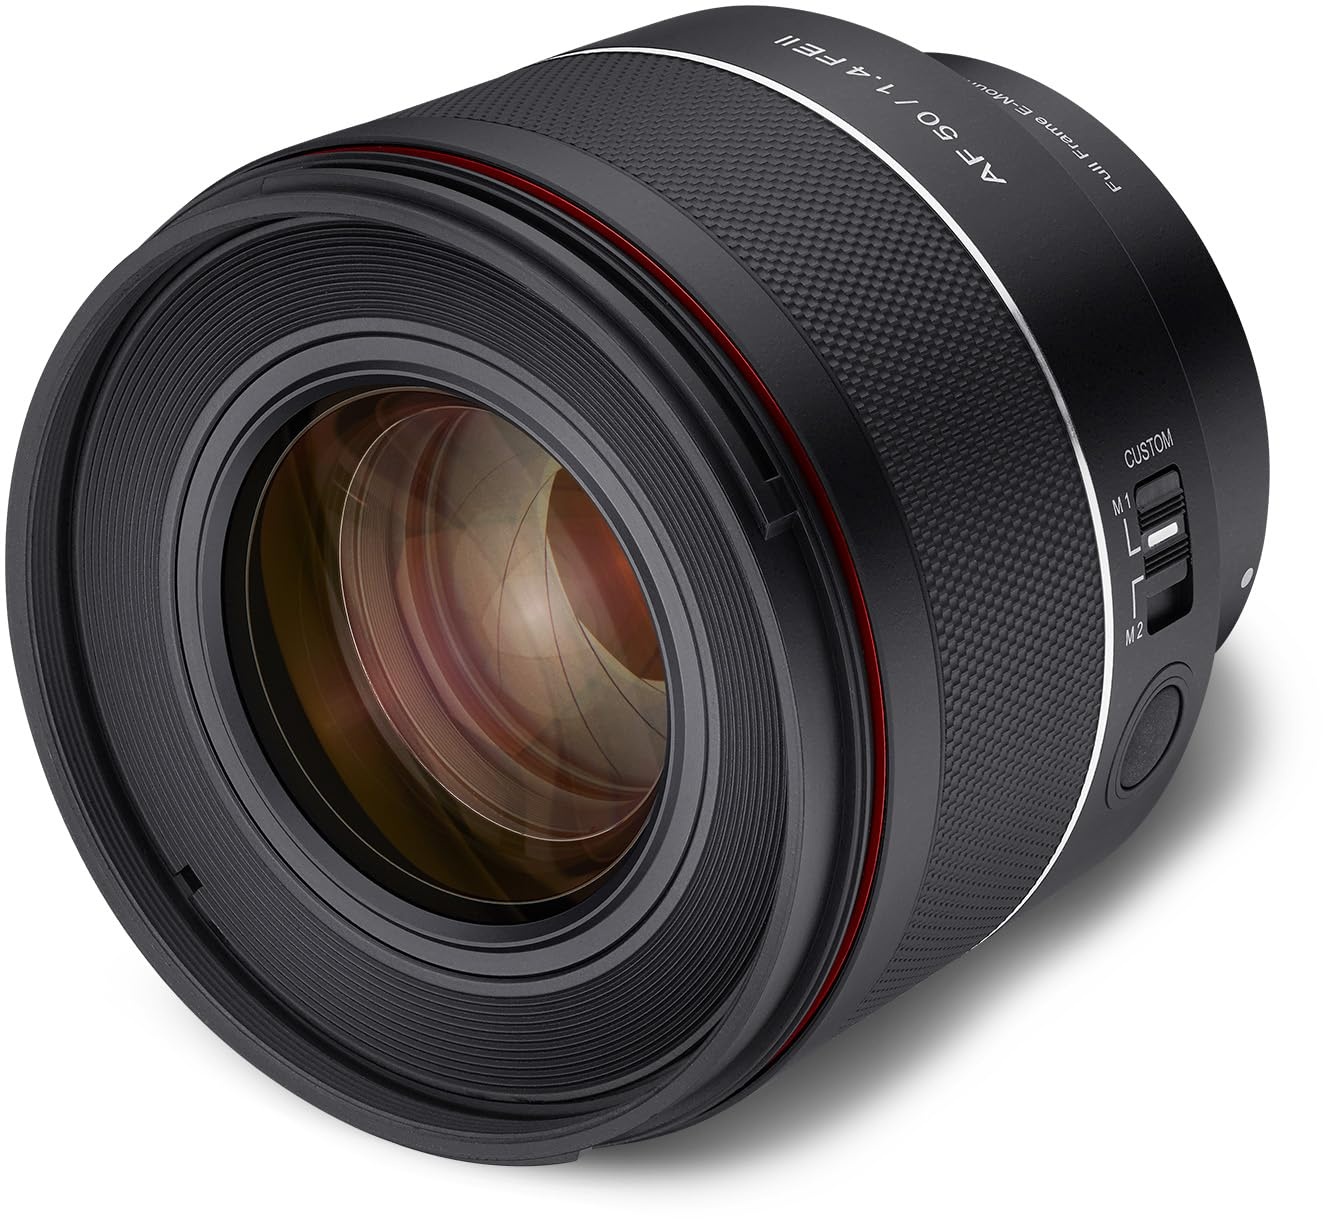 Samyang AF 50mm F1,4 II FE für Sony E - Standard Autofokus Objektiv für spiegellose Systemkameras von Sony, für Vollformat und APS-C Sensoren, Ideal für Detailaufnahmen